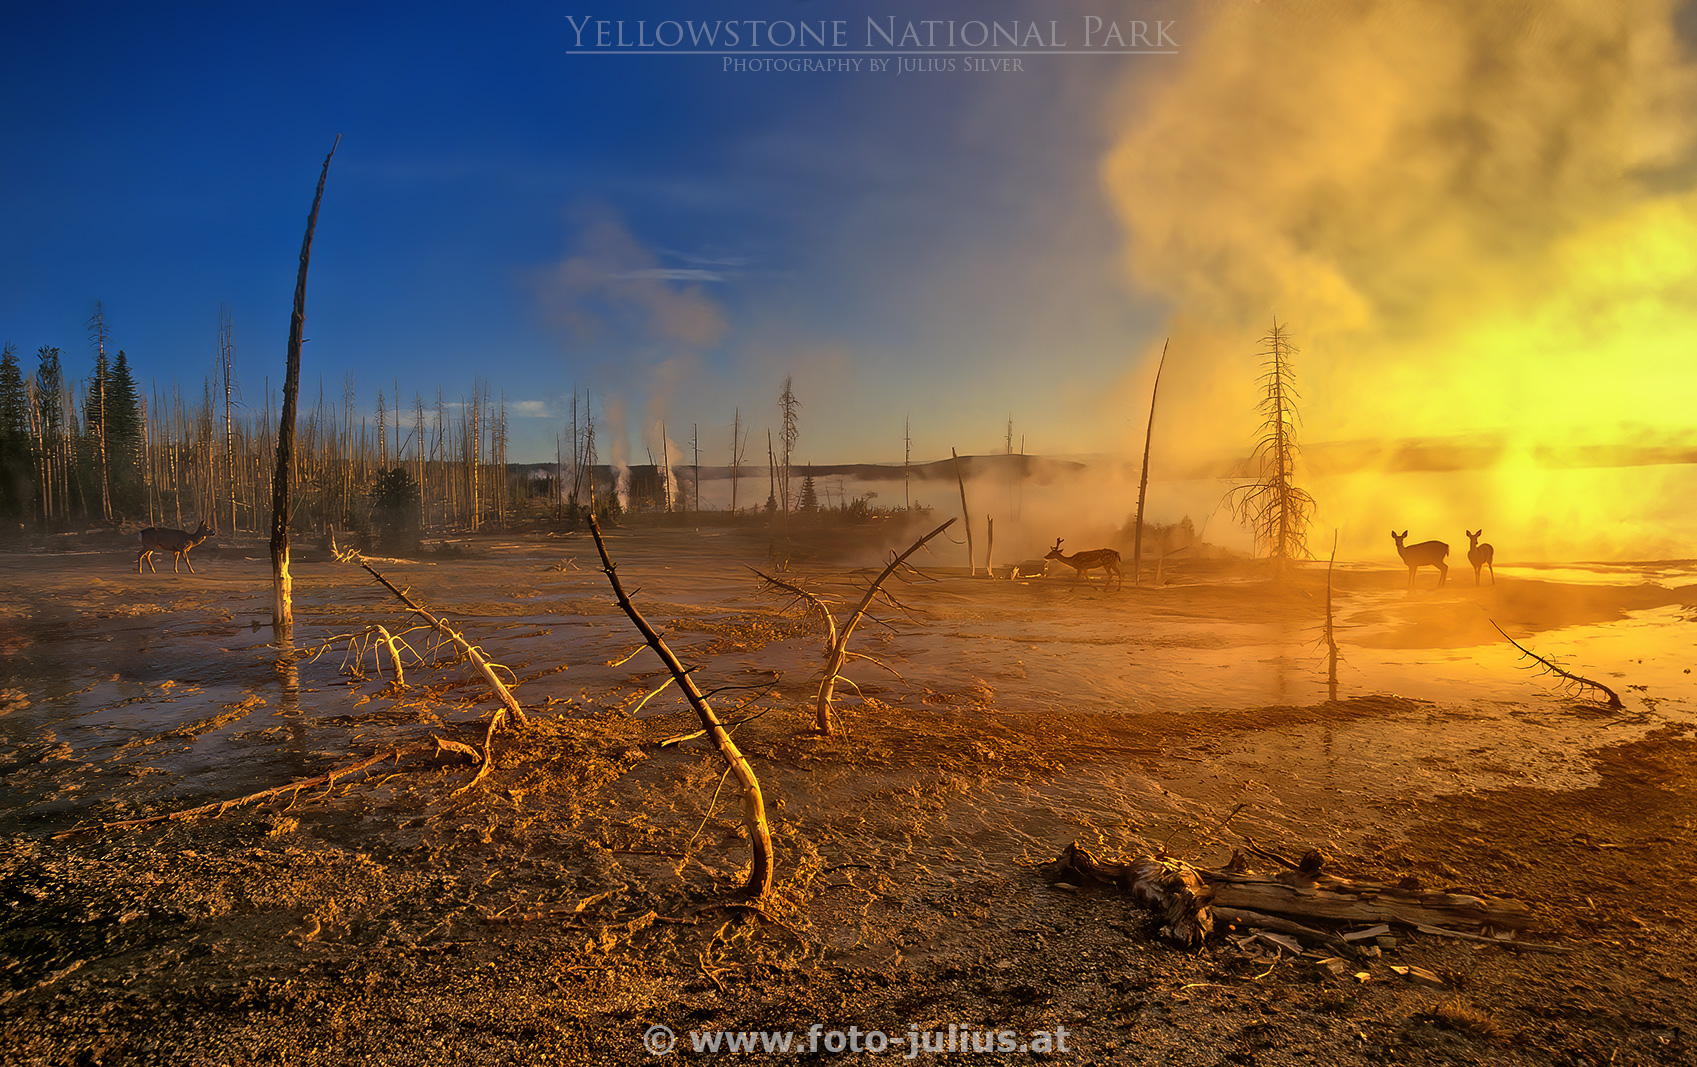 y004a_West_Thumb_Basin_Yellowstone.jpg, 602kB